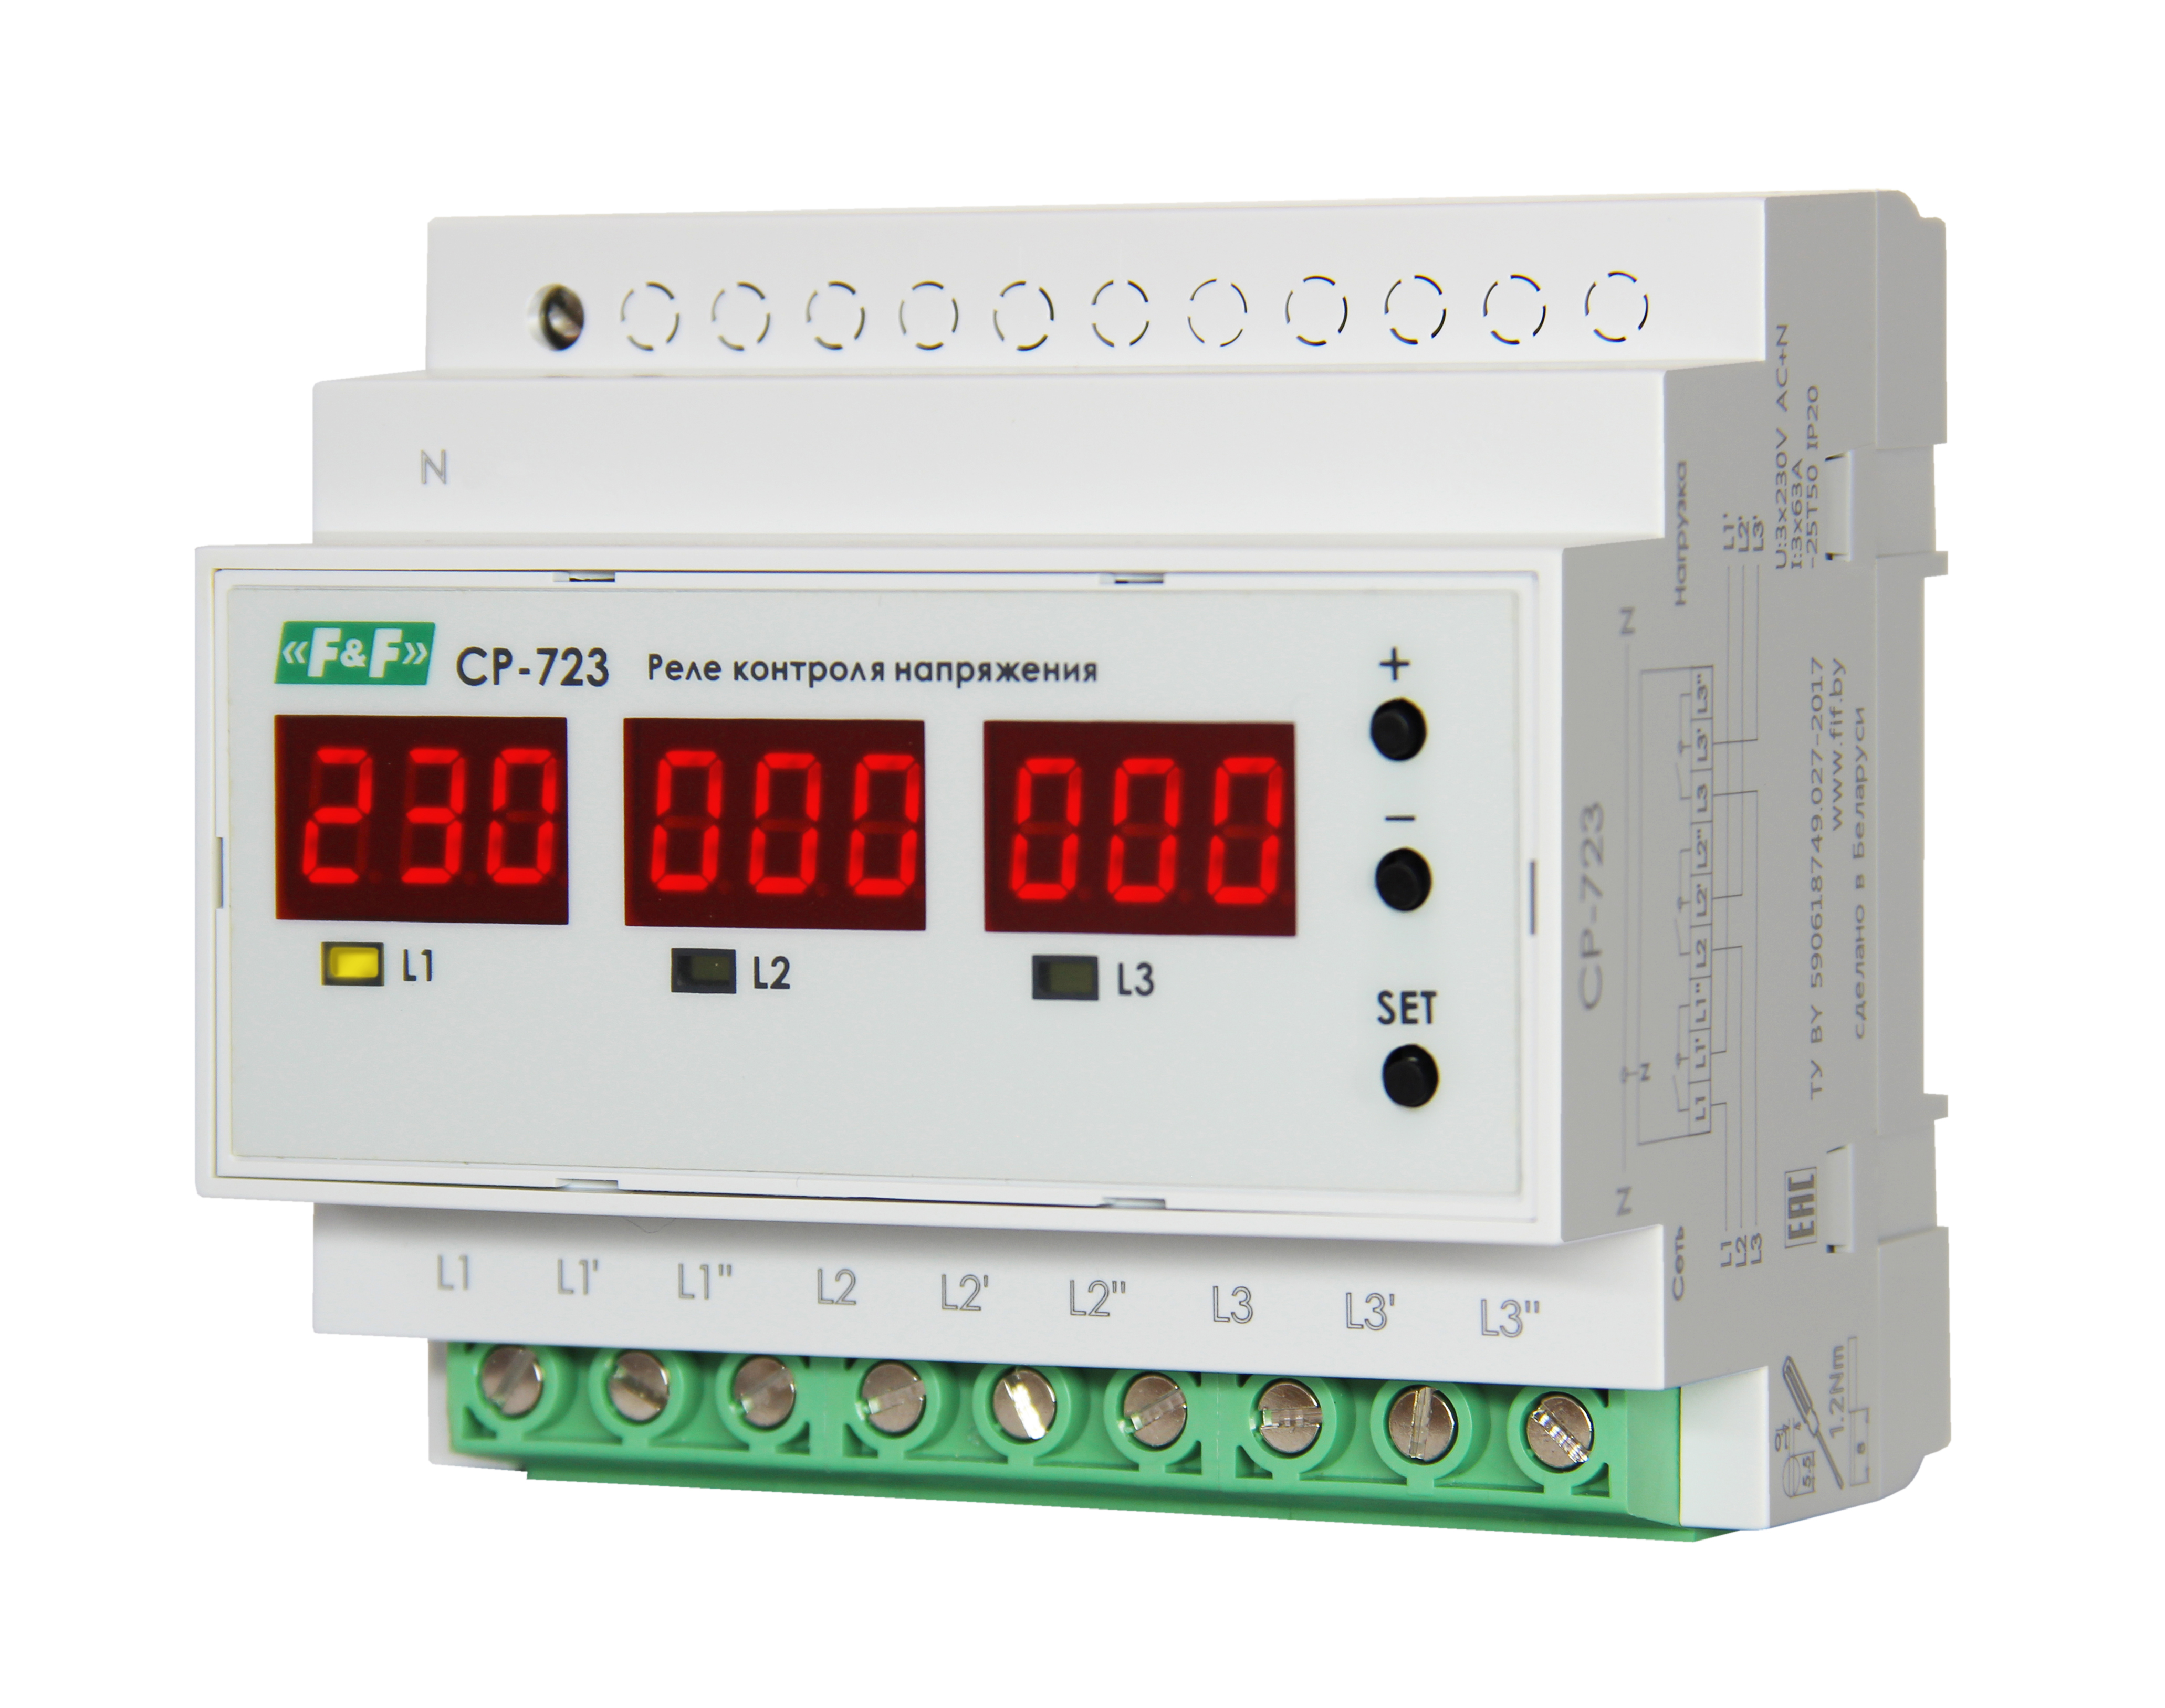 Реле контроля фаз Евроавтоматика F&F CP-723, белый (EA04.009.015)